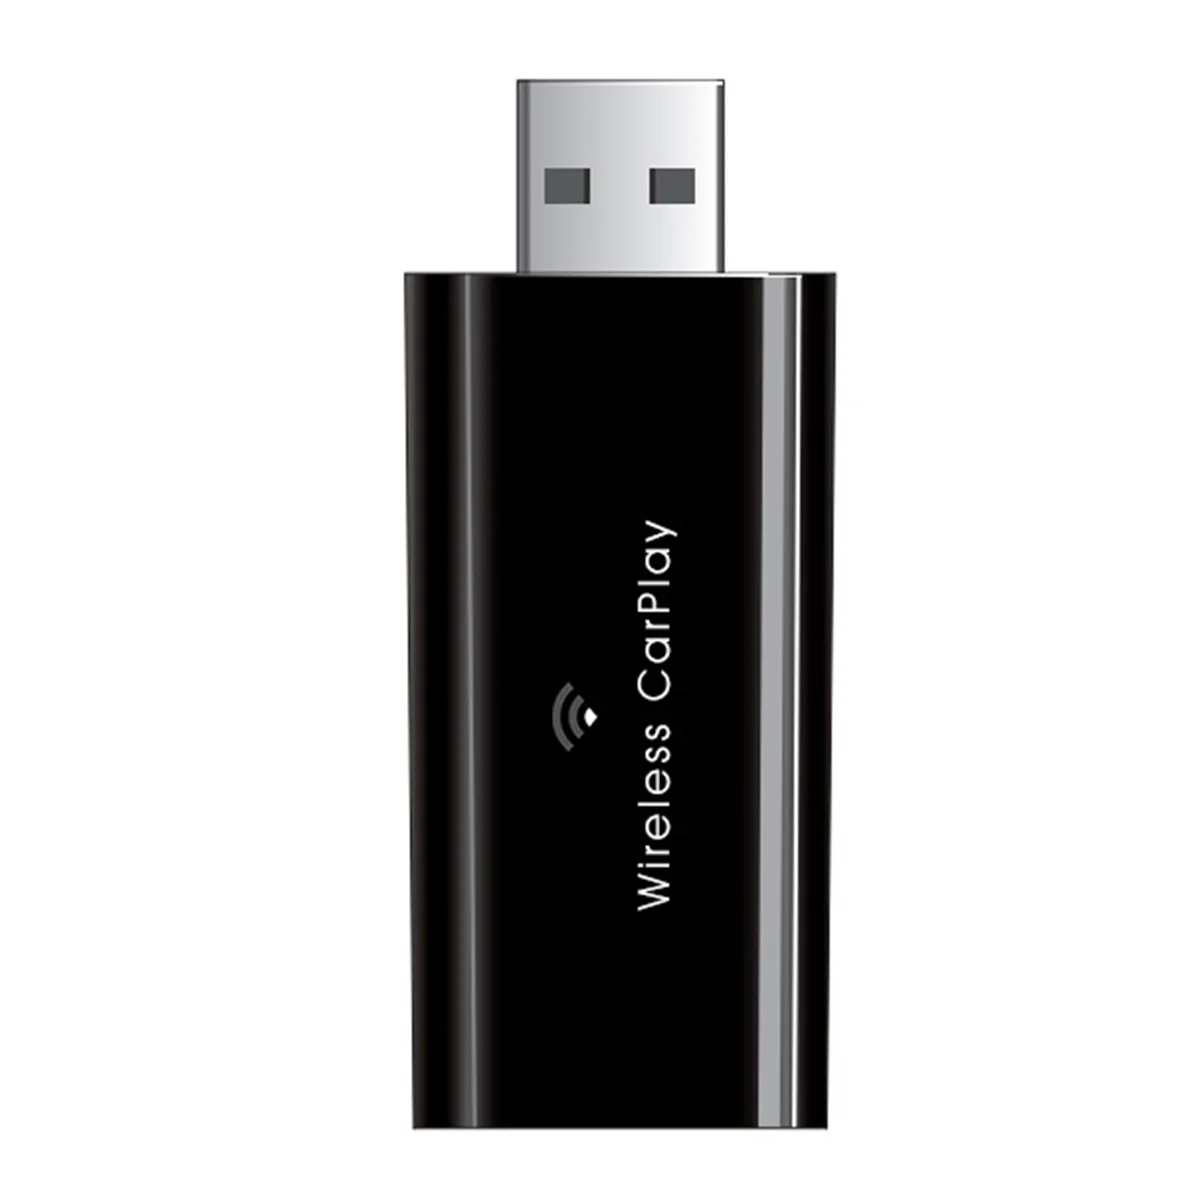 

USB Wireless CarPlay Adapter 5Ghz WiFi Fastest Smallest Slimmest Wireless CarPlay Adapter for IOS Wired CarPlay Cars